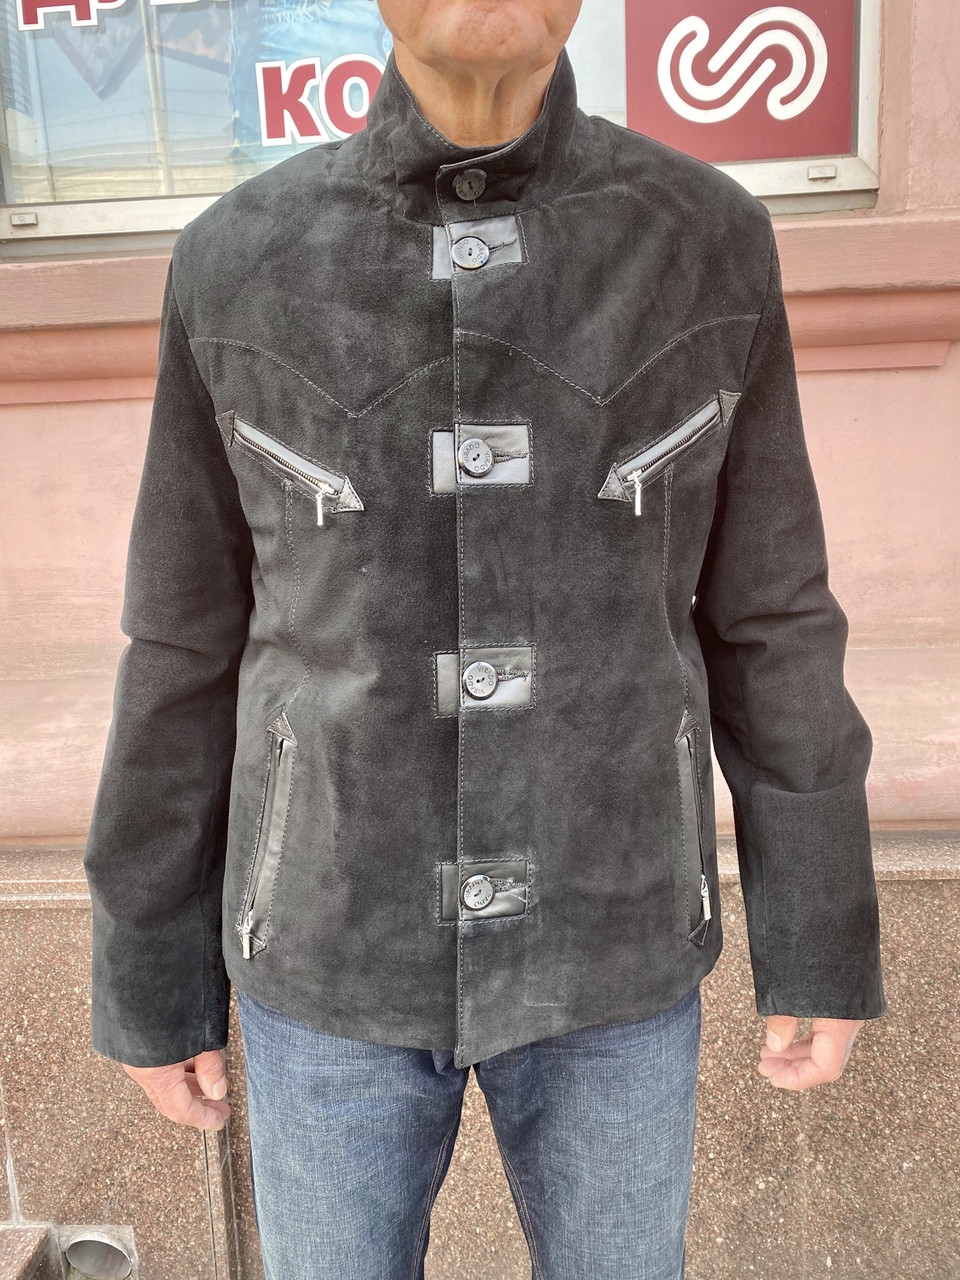 Куртка чоловіча замша натуральна коротка чорна на ґудзиках демісезонна